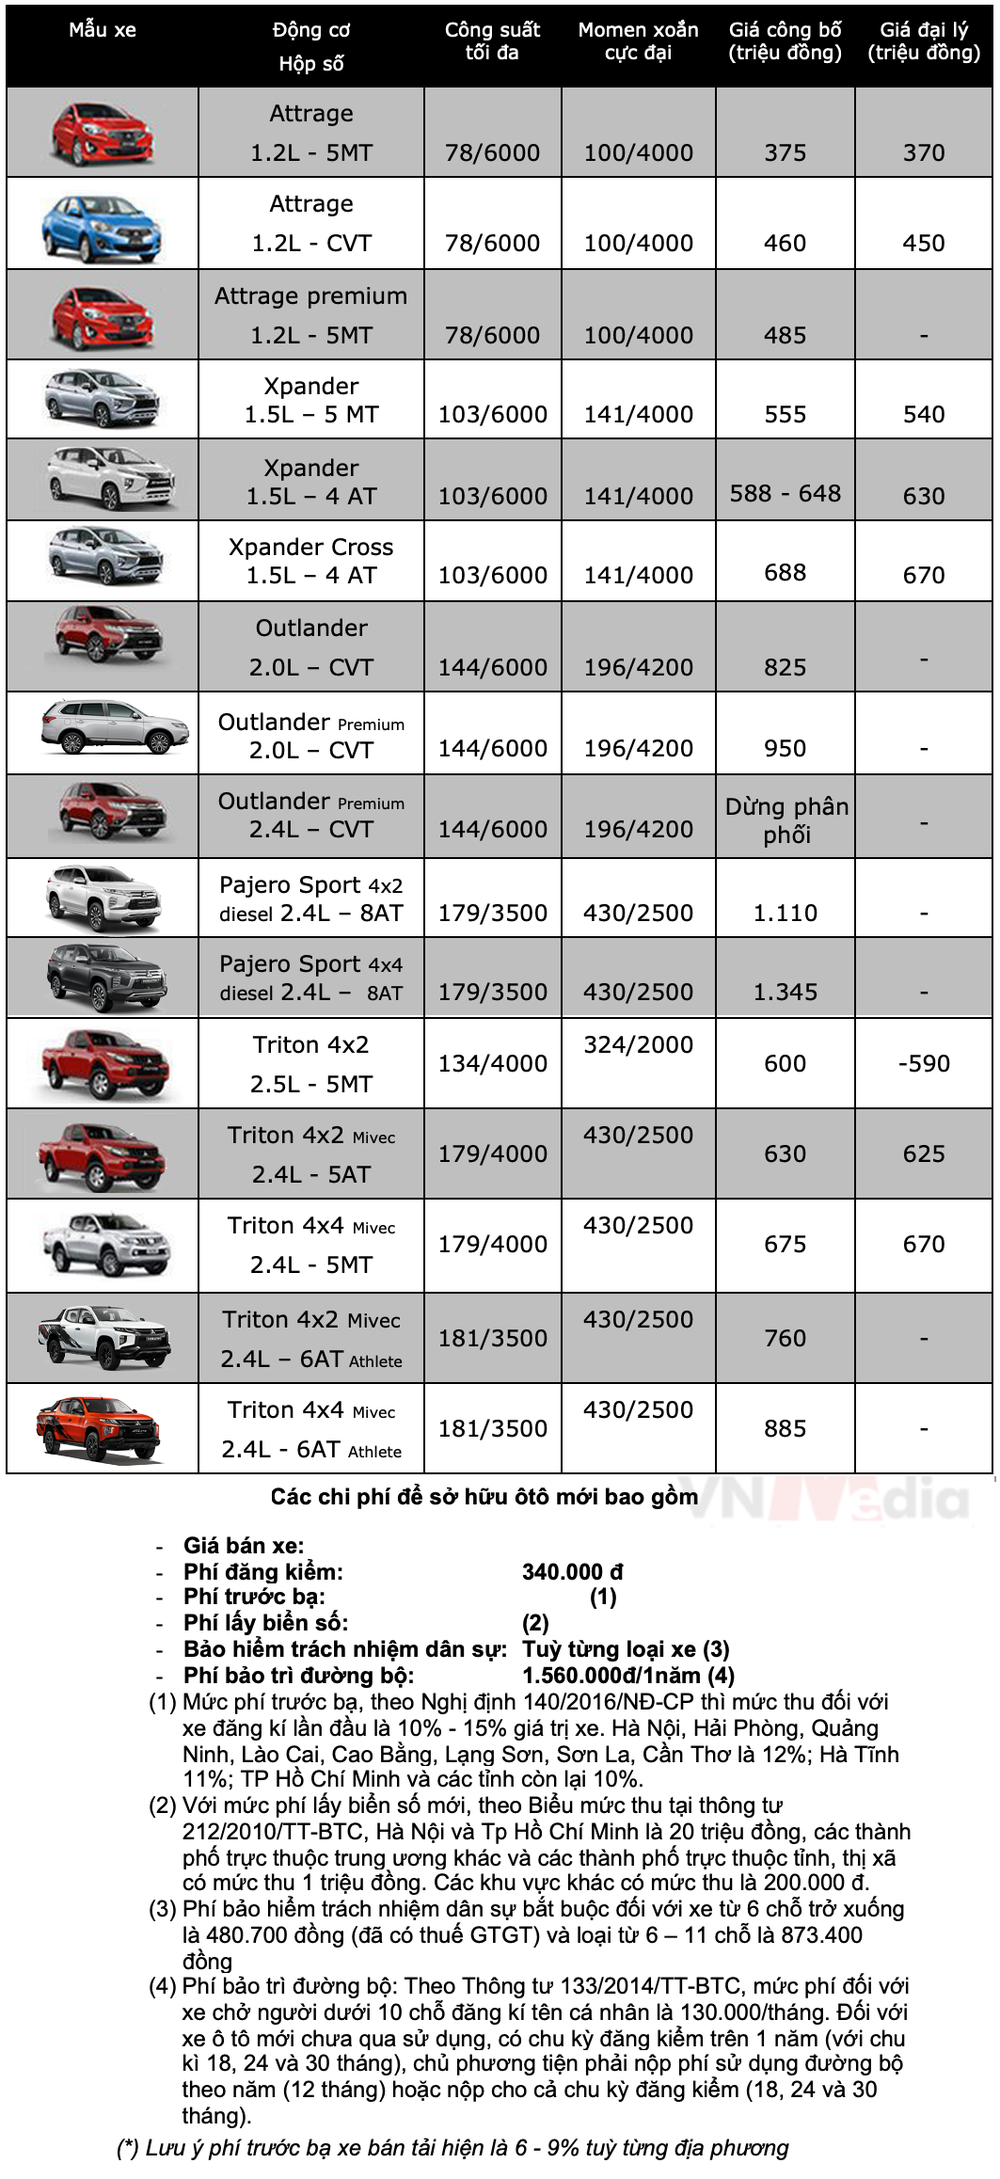 Bảng giá xe Mitsubishi tháng 3: Mitsubishi Triton được ưu đãi 50% lệ phí trước bạ - Ảnh 2.